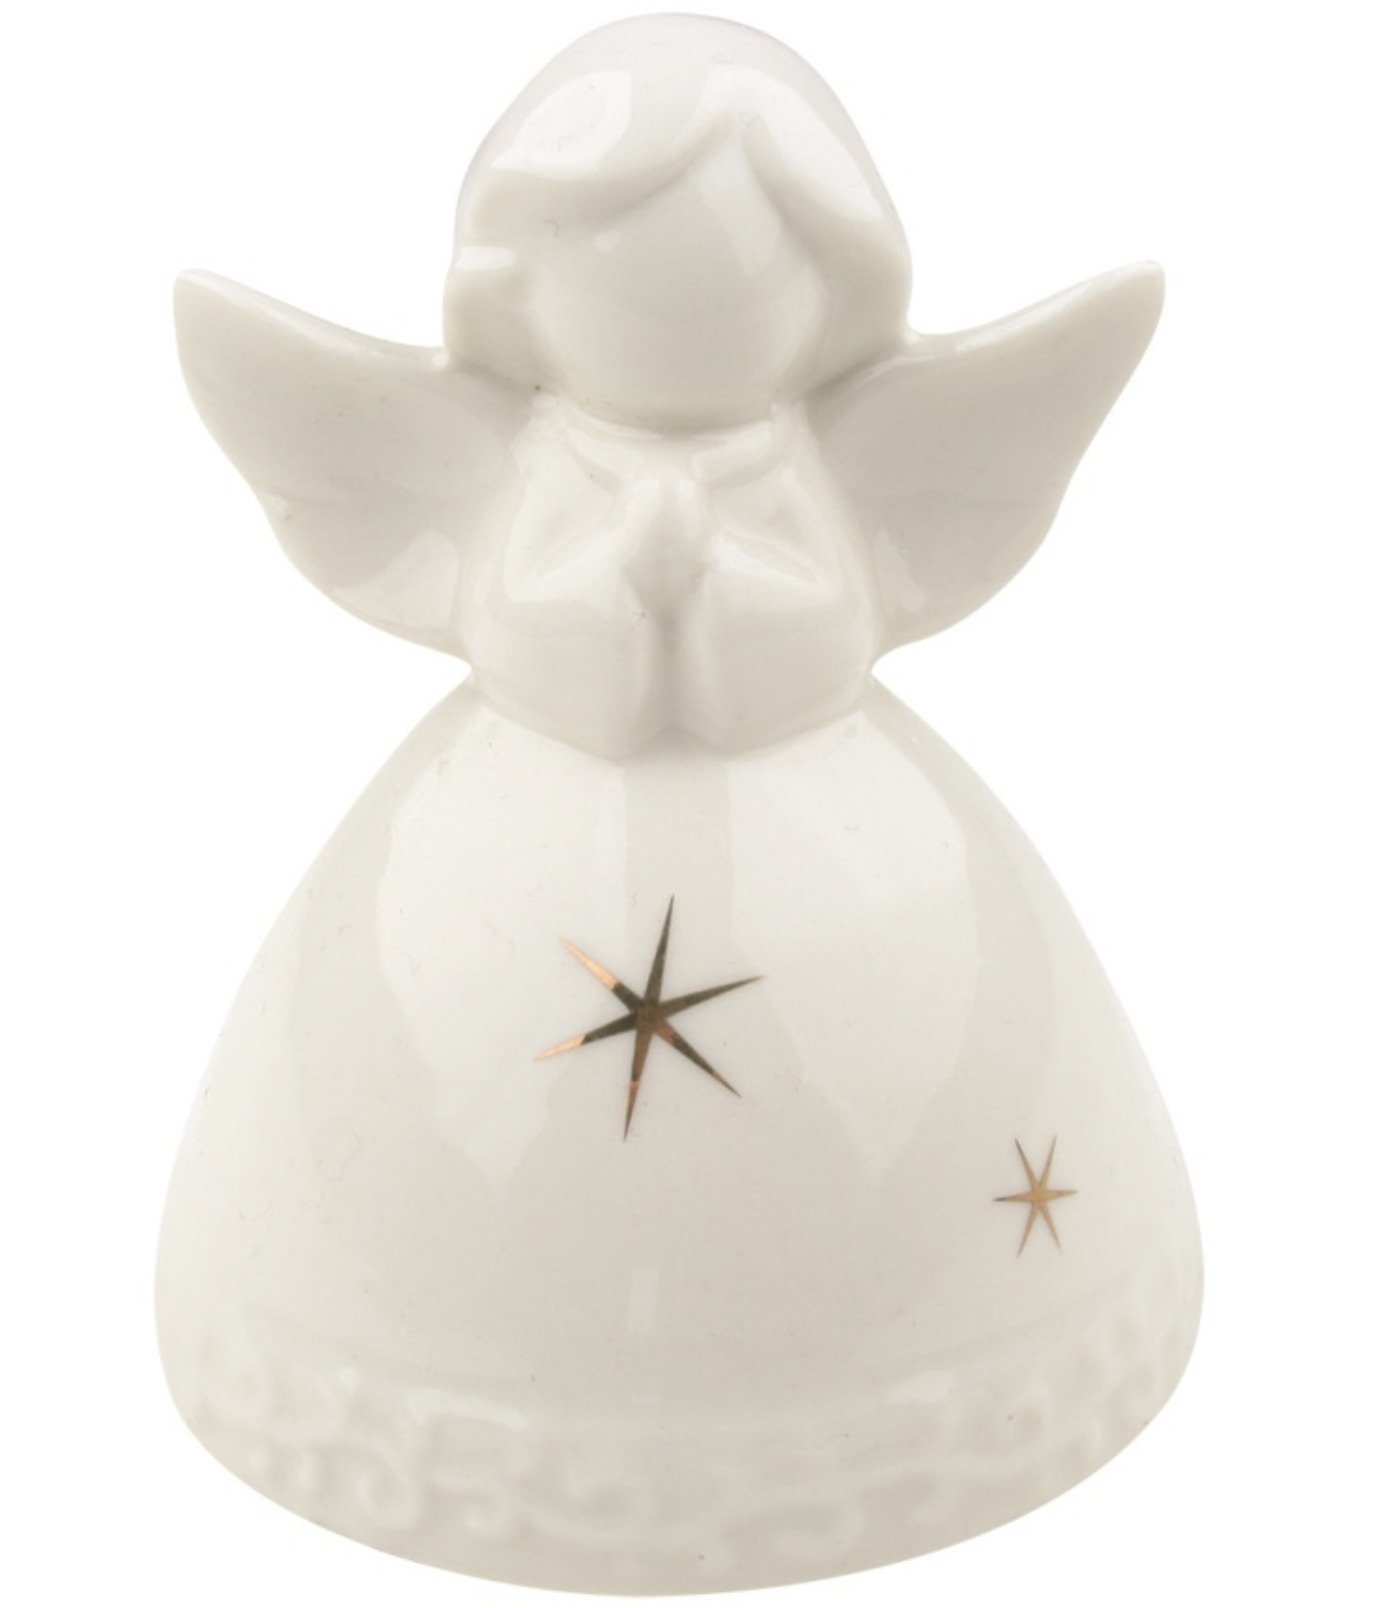 Anděl porcelánový - 8 cm